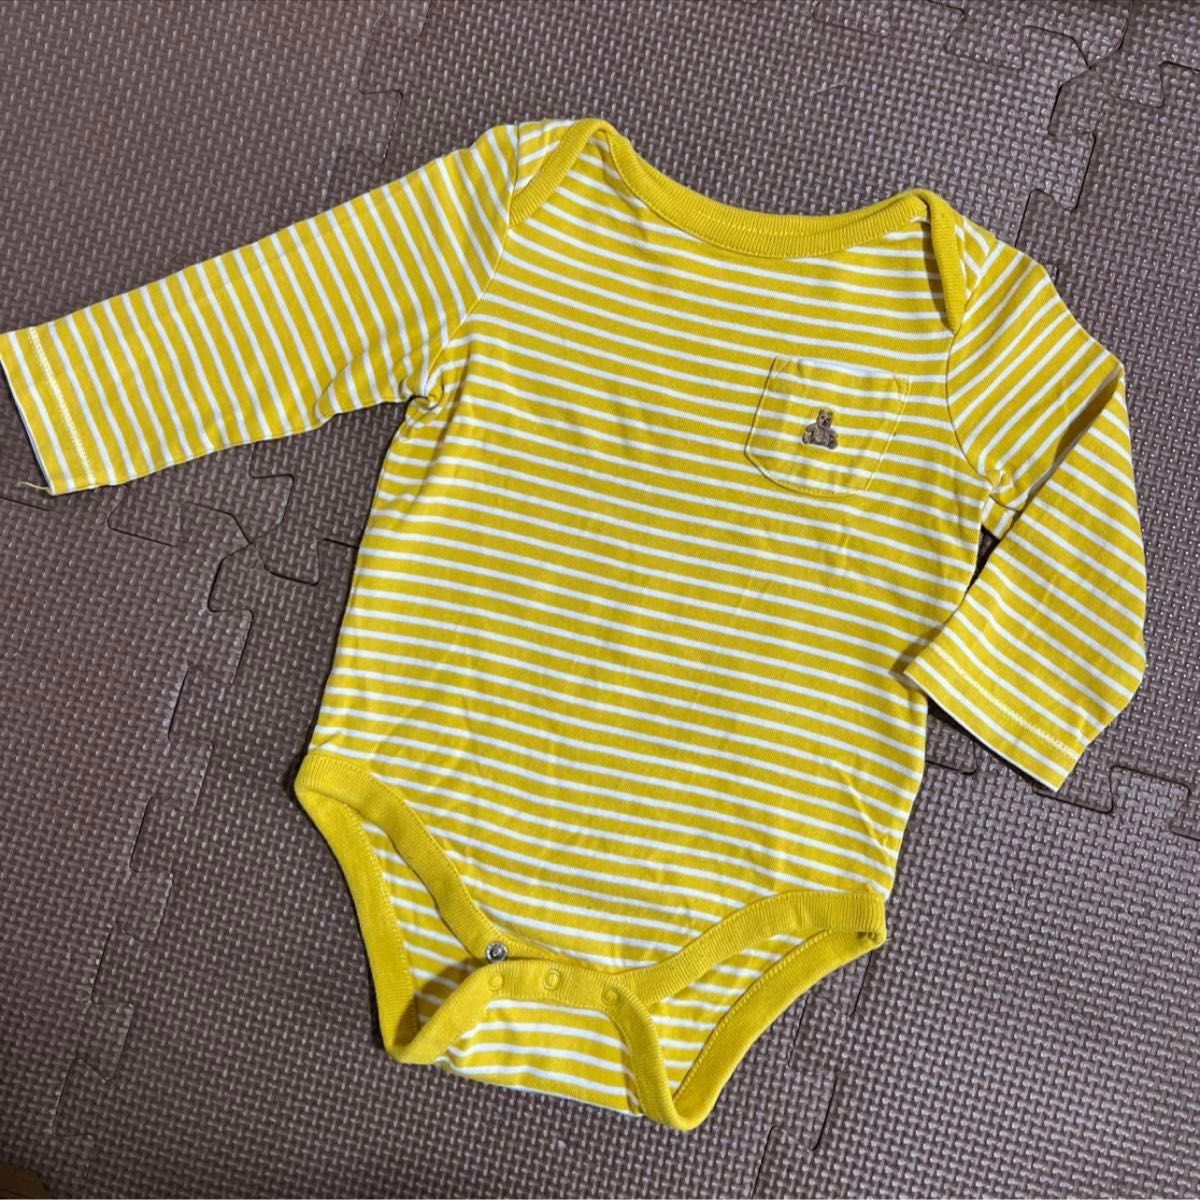  baby Gap 美品 70 長袖 半袖 ロンパース 肌着 4着セット　まとめ売り 6m 12m 6ヶ月1歳 ボディスーツ